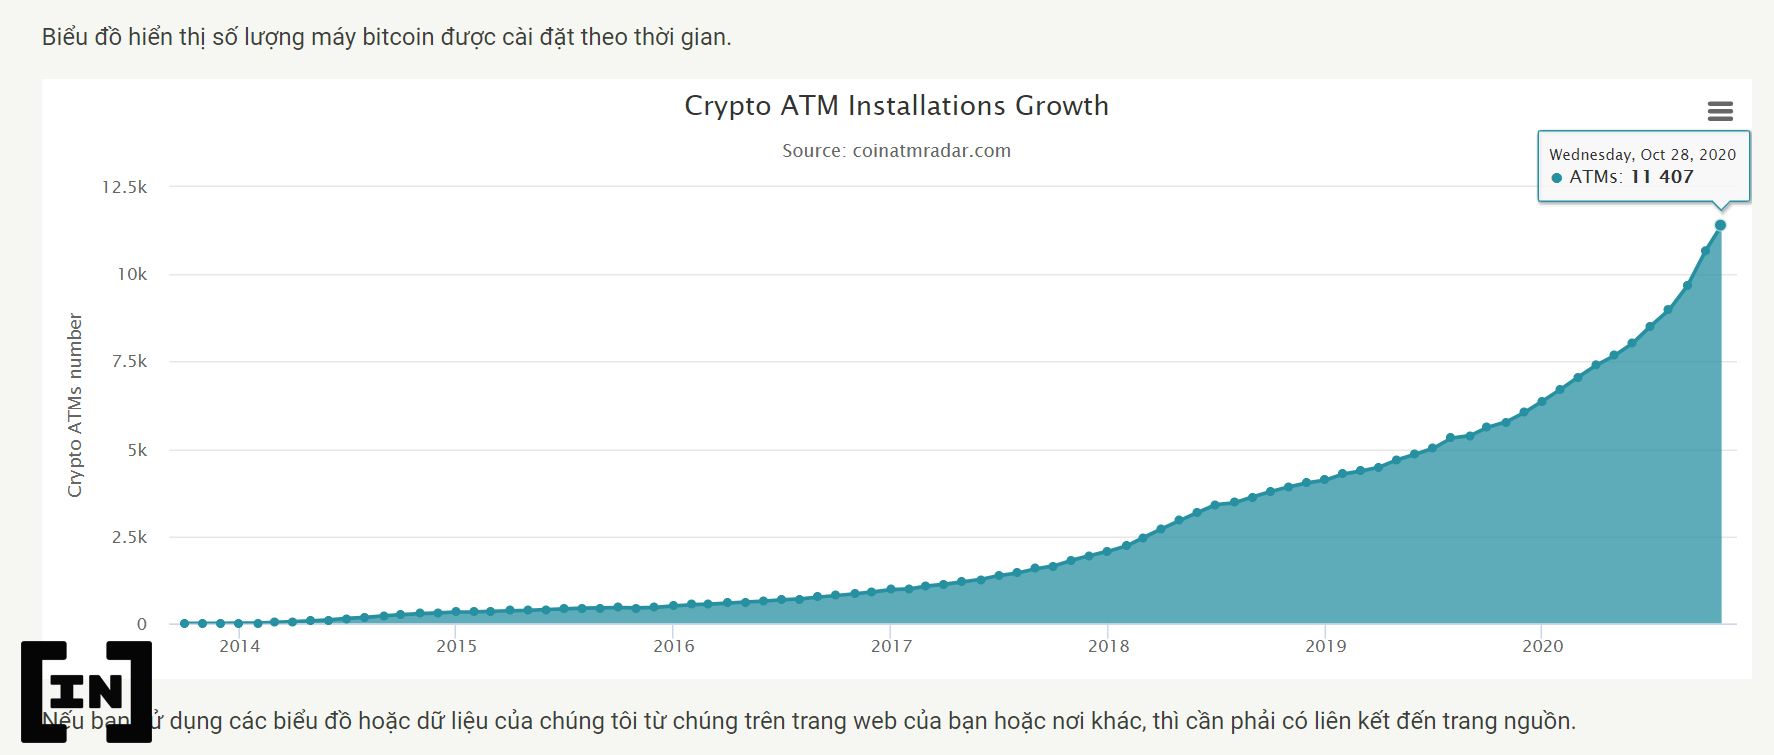 Số lượng máy ATM Bitcoin